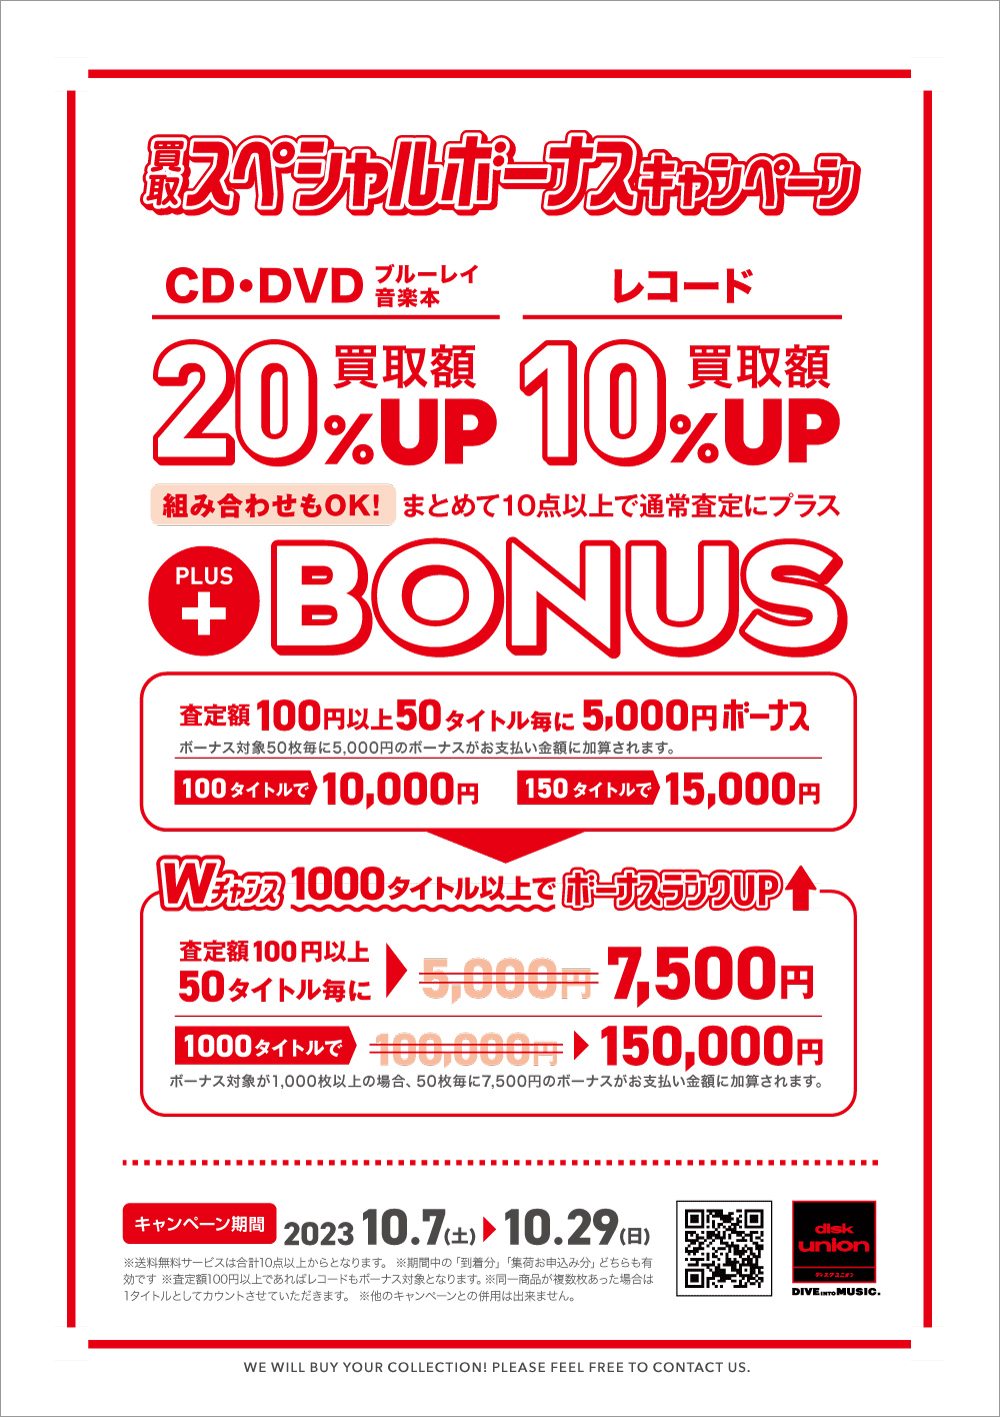 買取UP】CD・DVD・ブルーレイ・音楽本買取査定金額20%UP+レコード買取